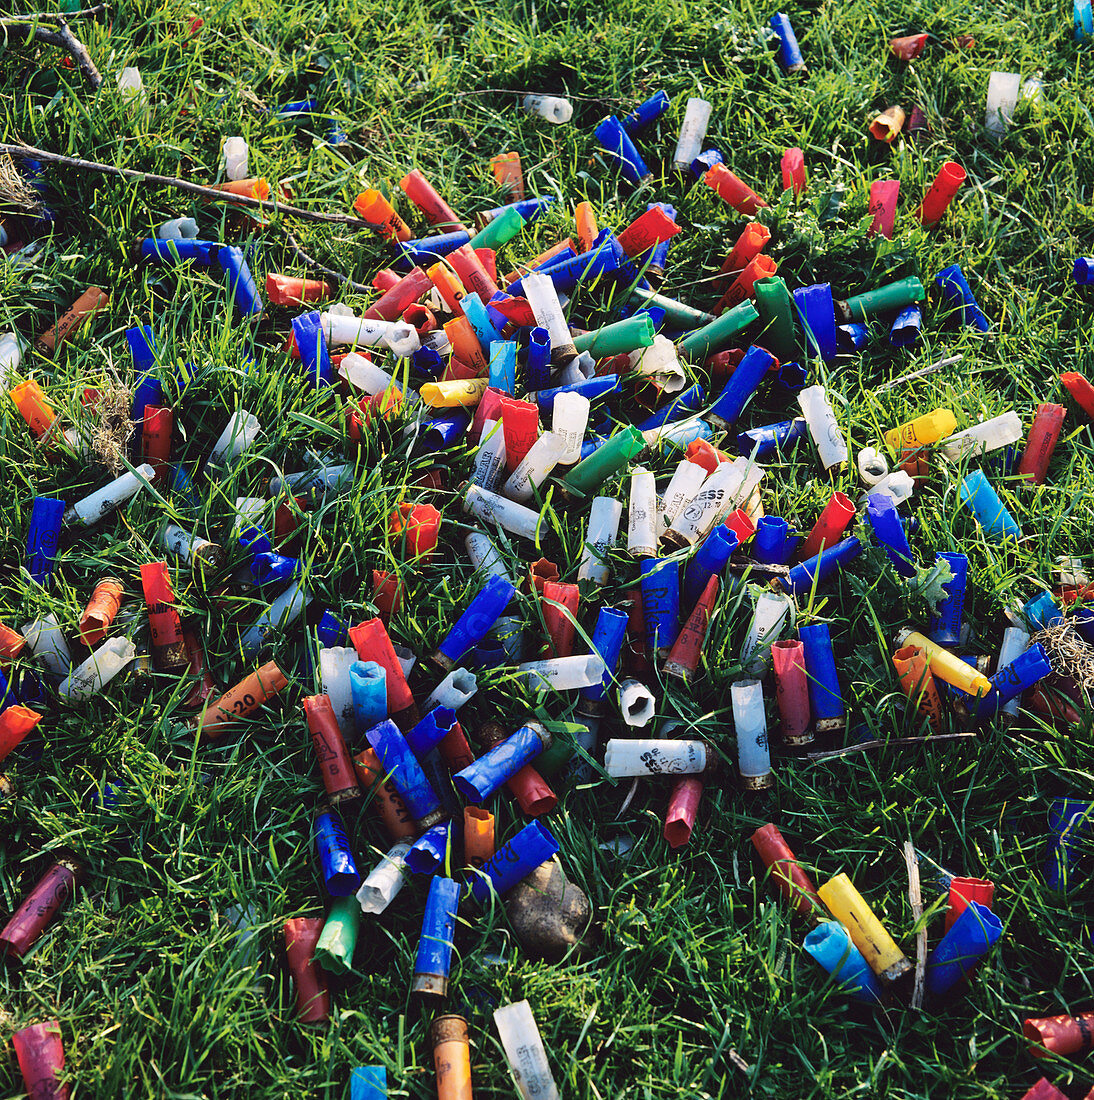 Dumped gun cartridges